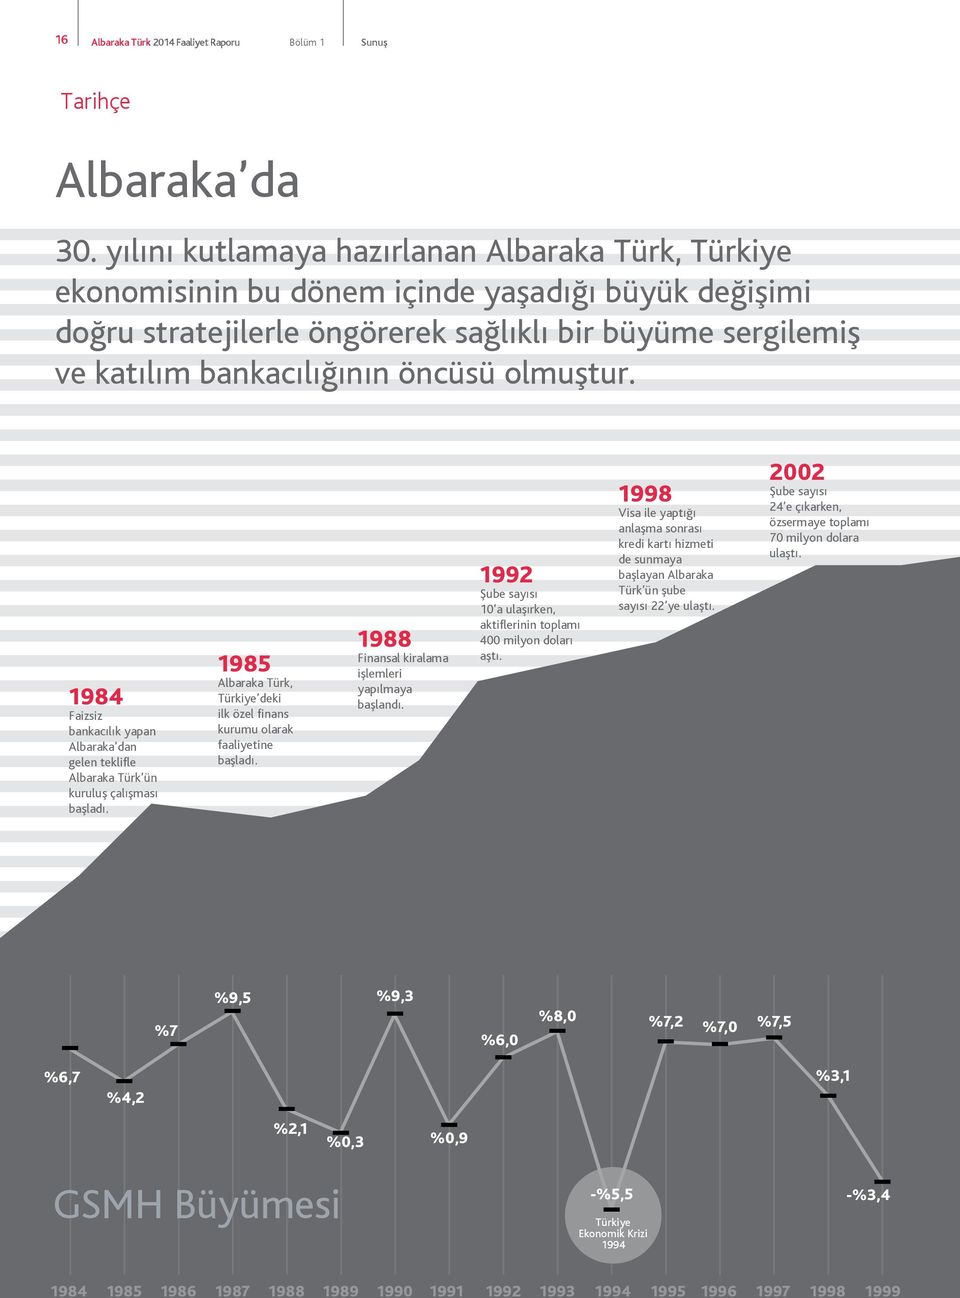 olmuştur. 1984 Faizsiz bankacılık yapan Albaraka dan gelen teklifle Albaraka Türk ün kuruluş çalışması başladı. 1985 Albaraka Türk, Türkiye deki ilk özel finans kurumu olarak faaliyetine başladı.